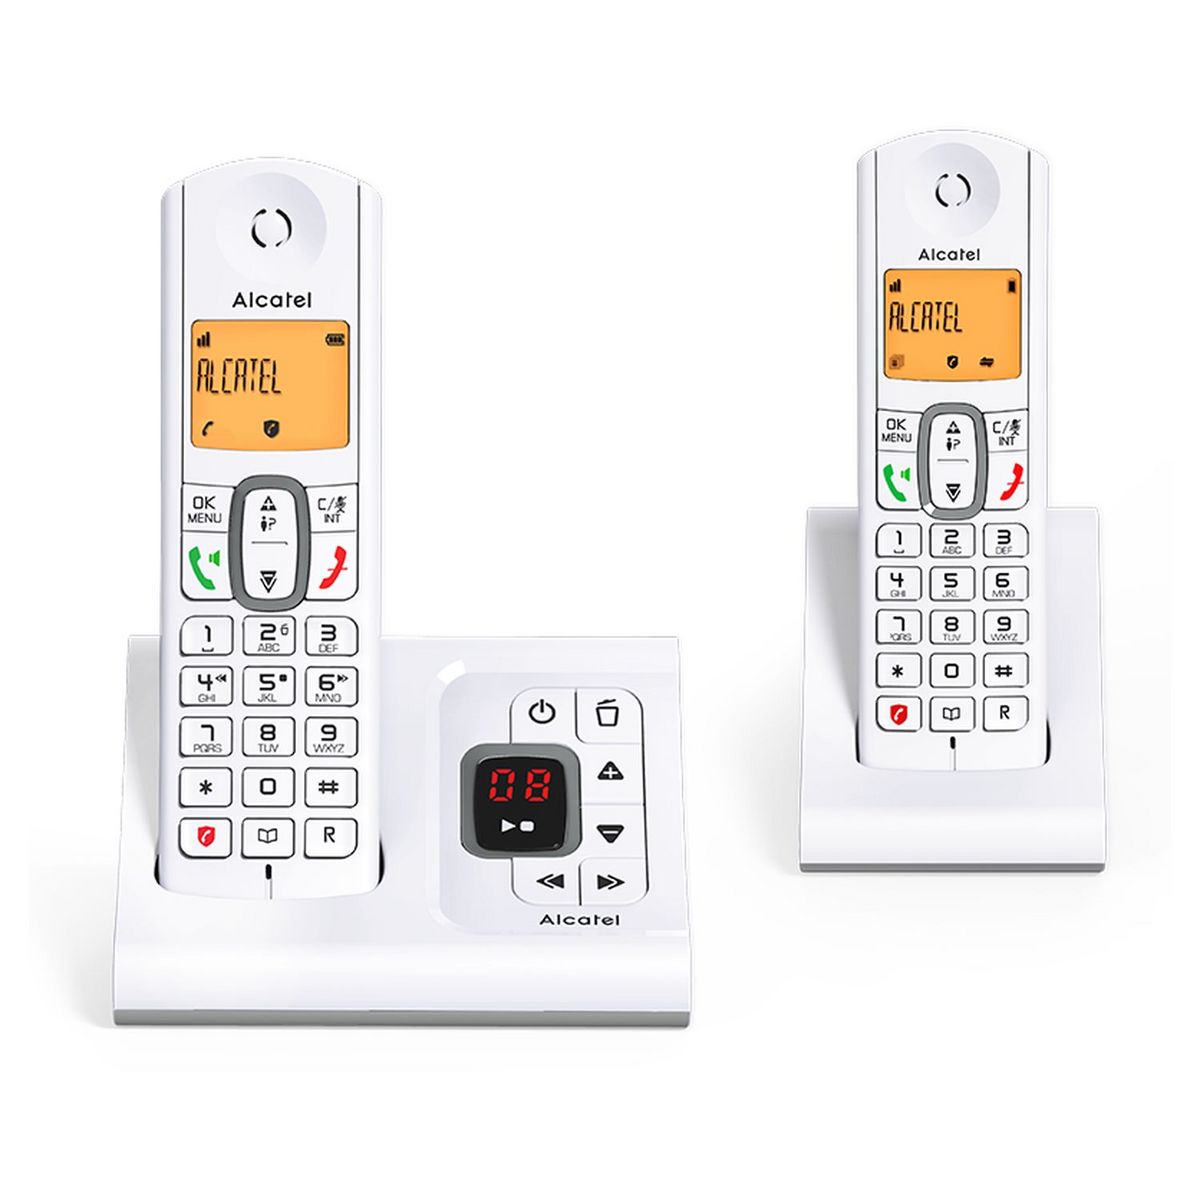 Téléphone sans fil - F630 Voice Duo - Répondeur - Gris